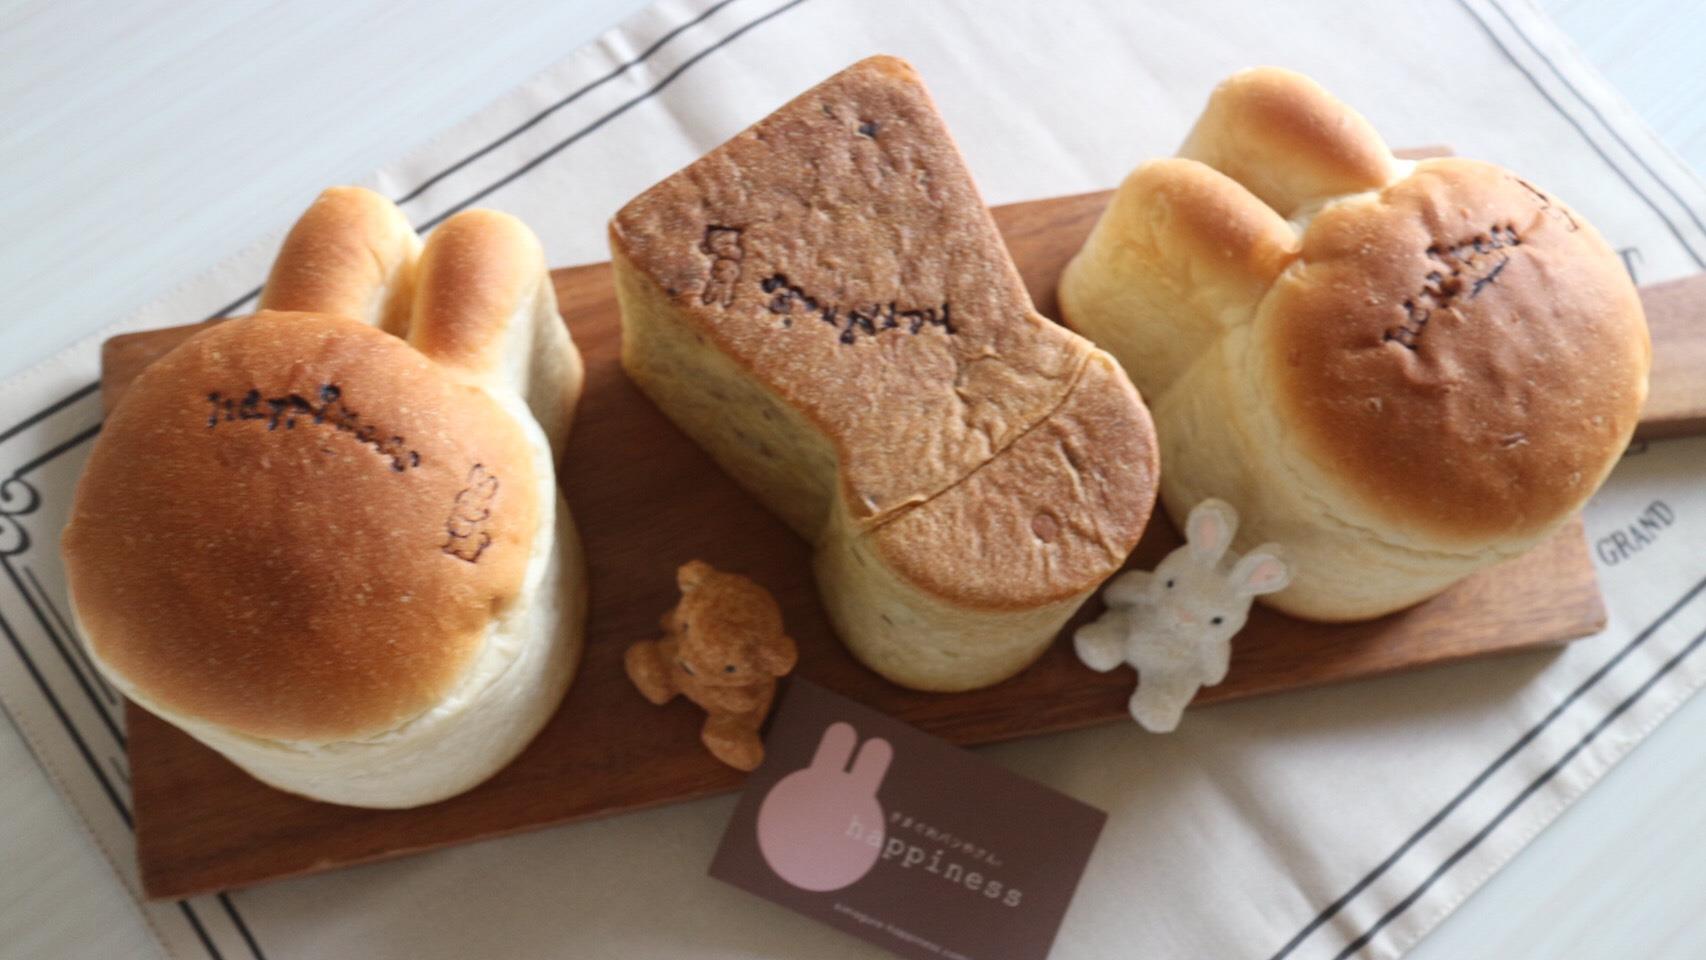 左からうさぎ型のパン、前方後円墳型のパン、うさぎ型のパンと3つのパンがかわいく並んでいる。うさぎとクマのぬいぐるみとショップカードが添えられている。